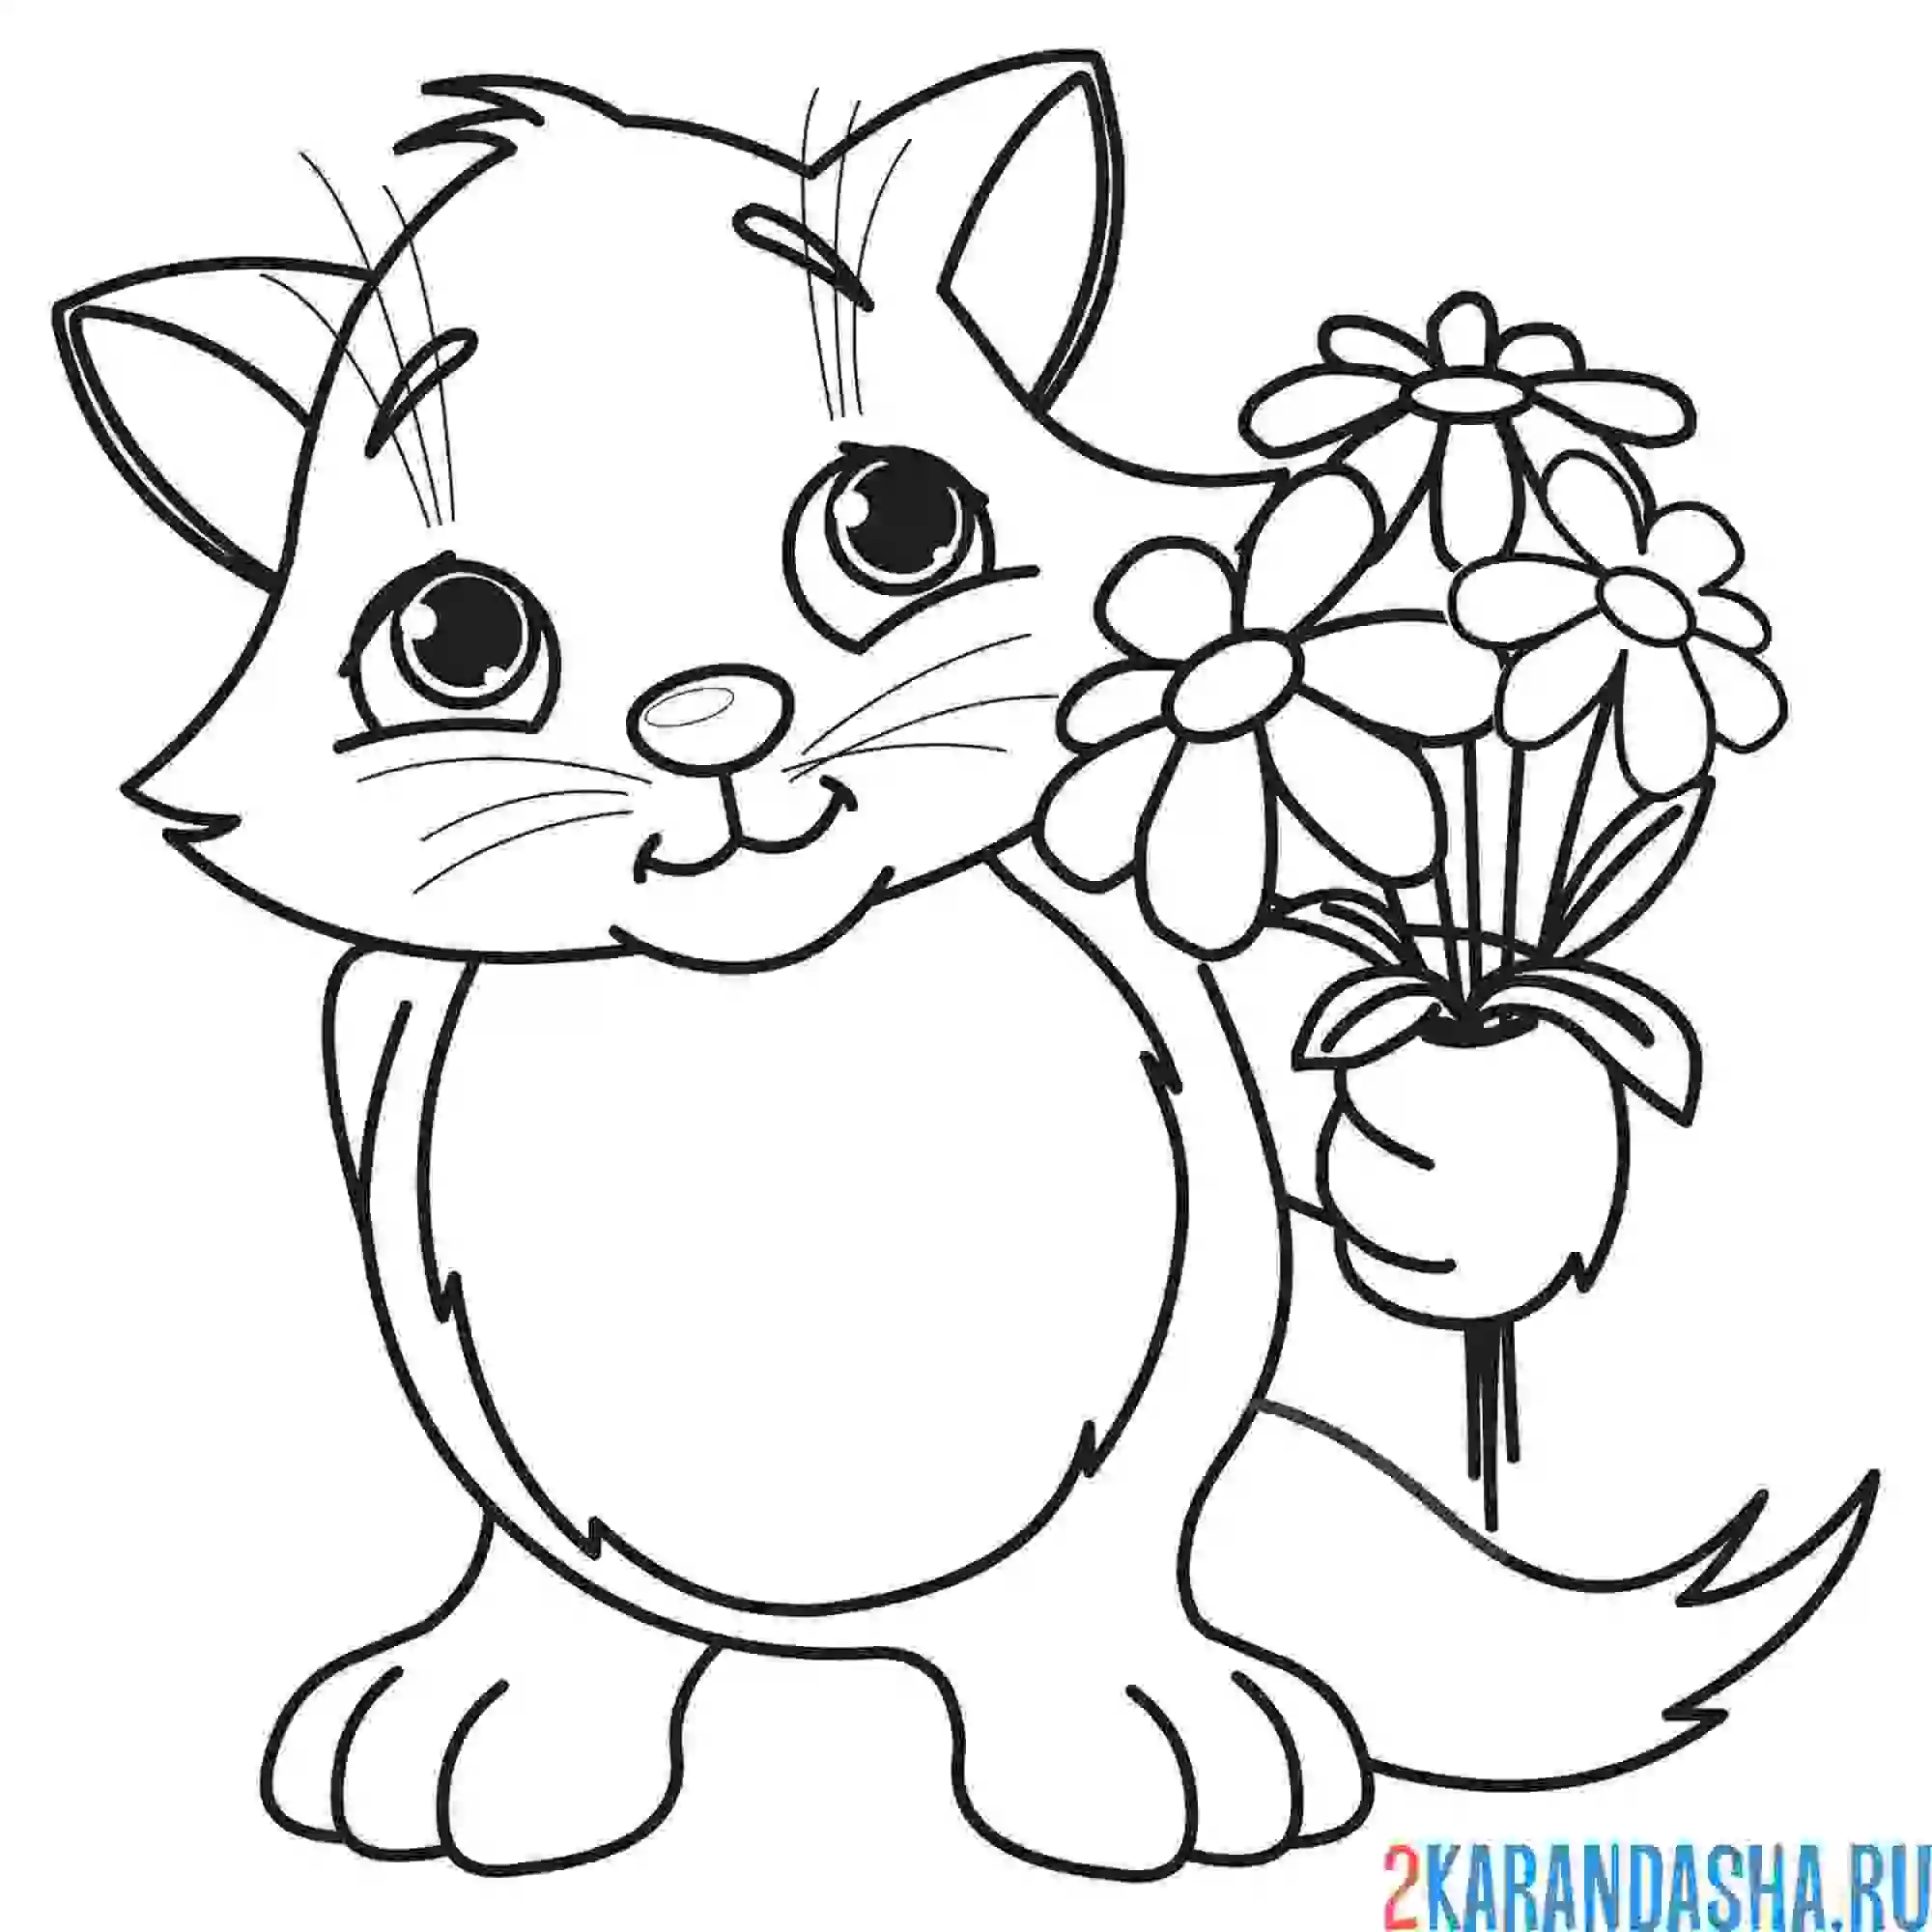 Раскраска котенок с букетом цветов